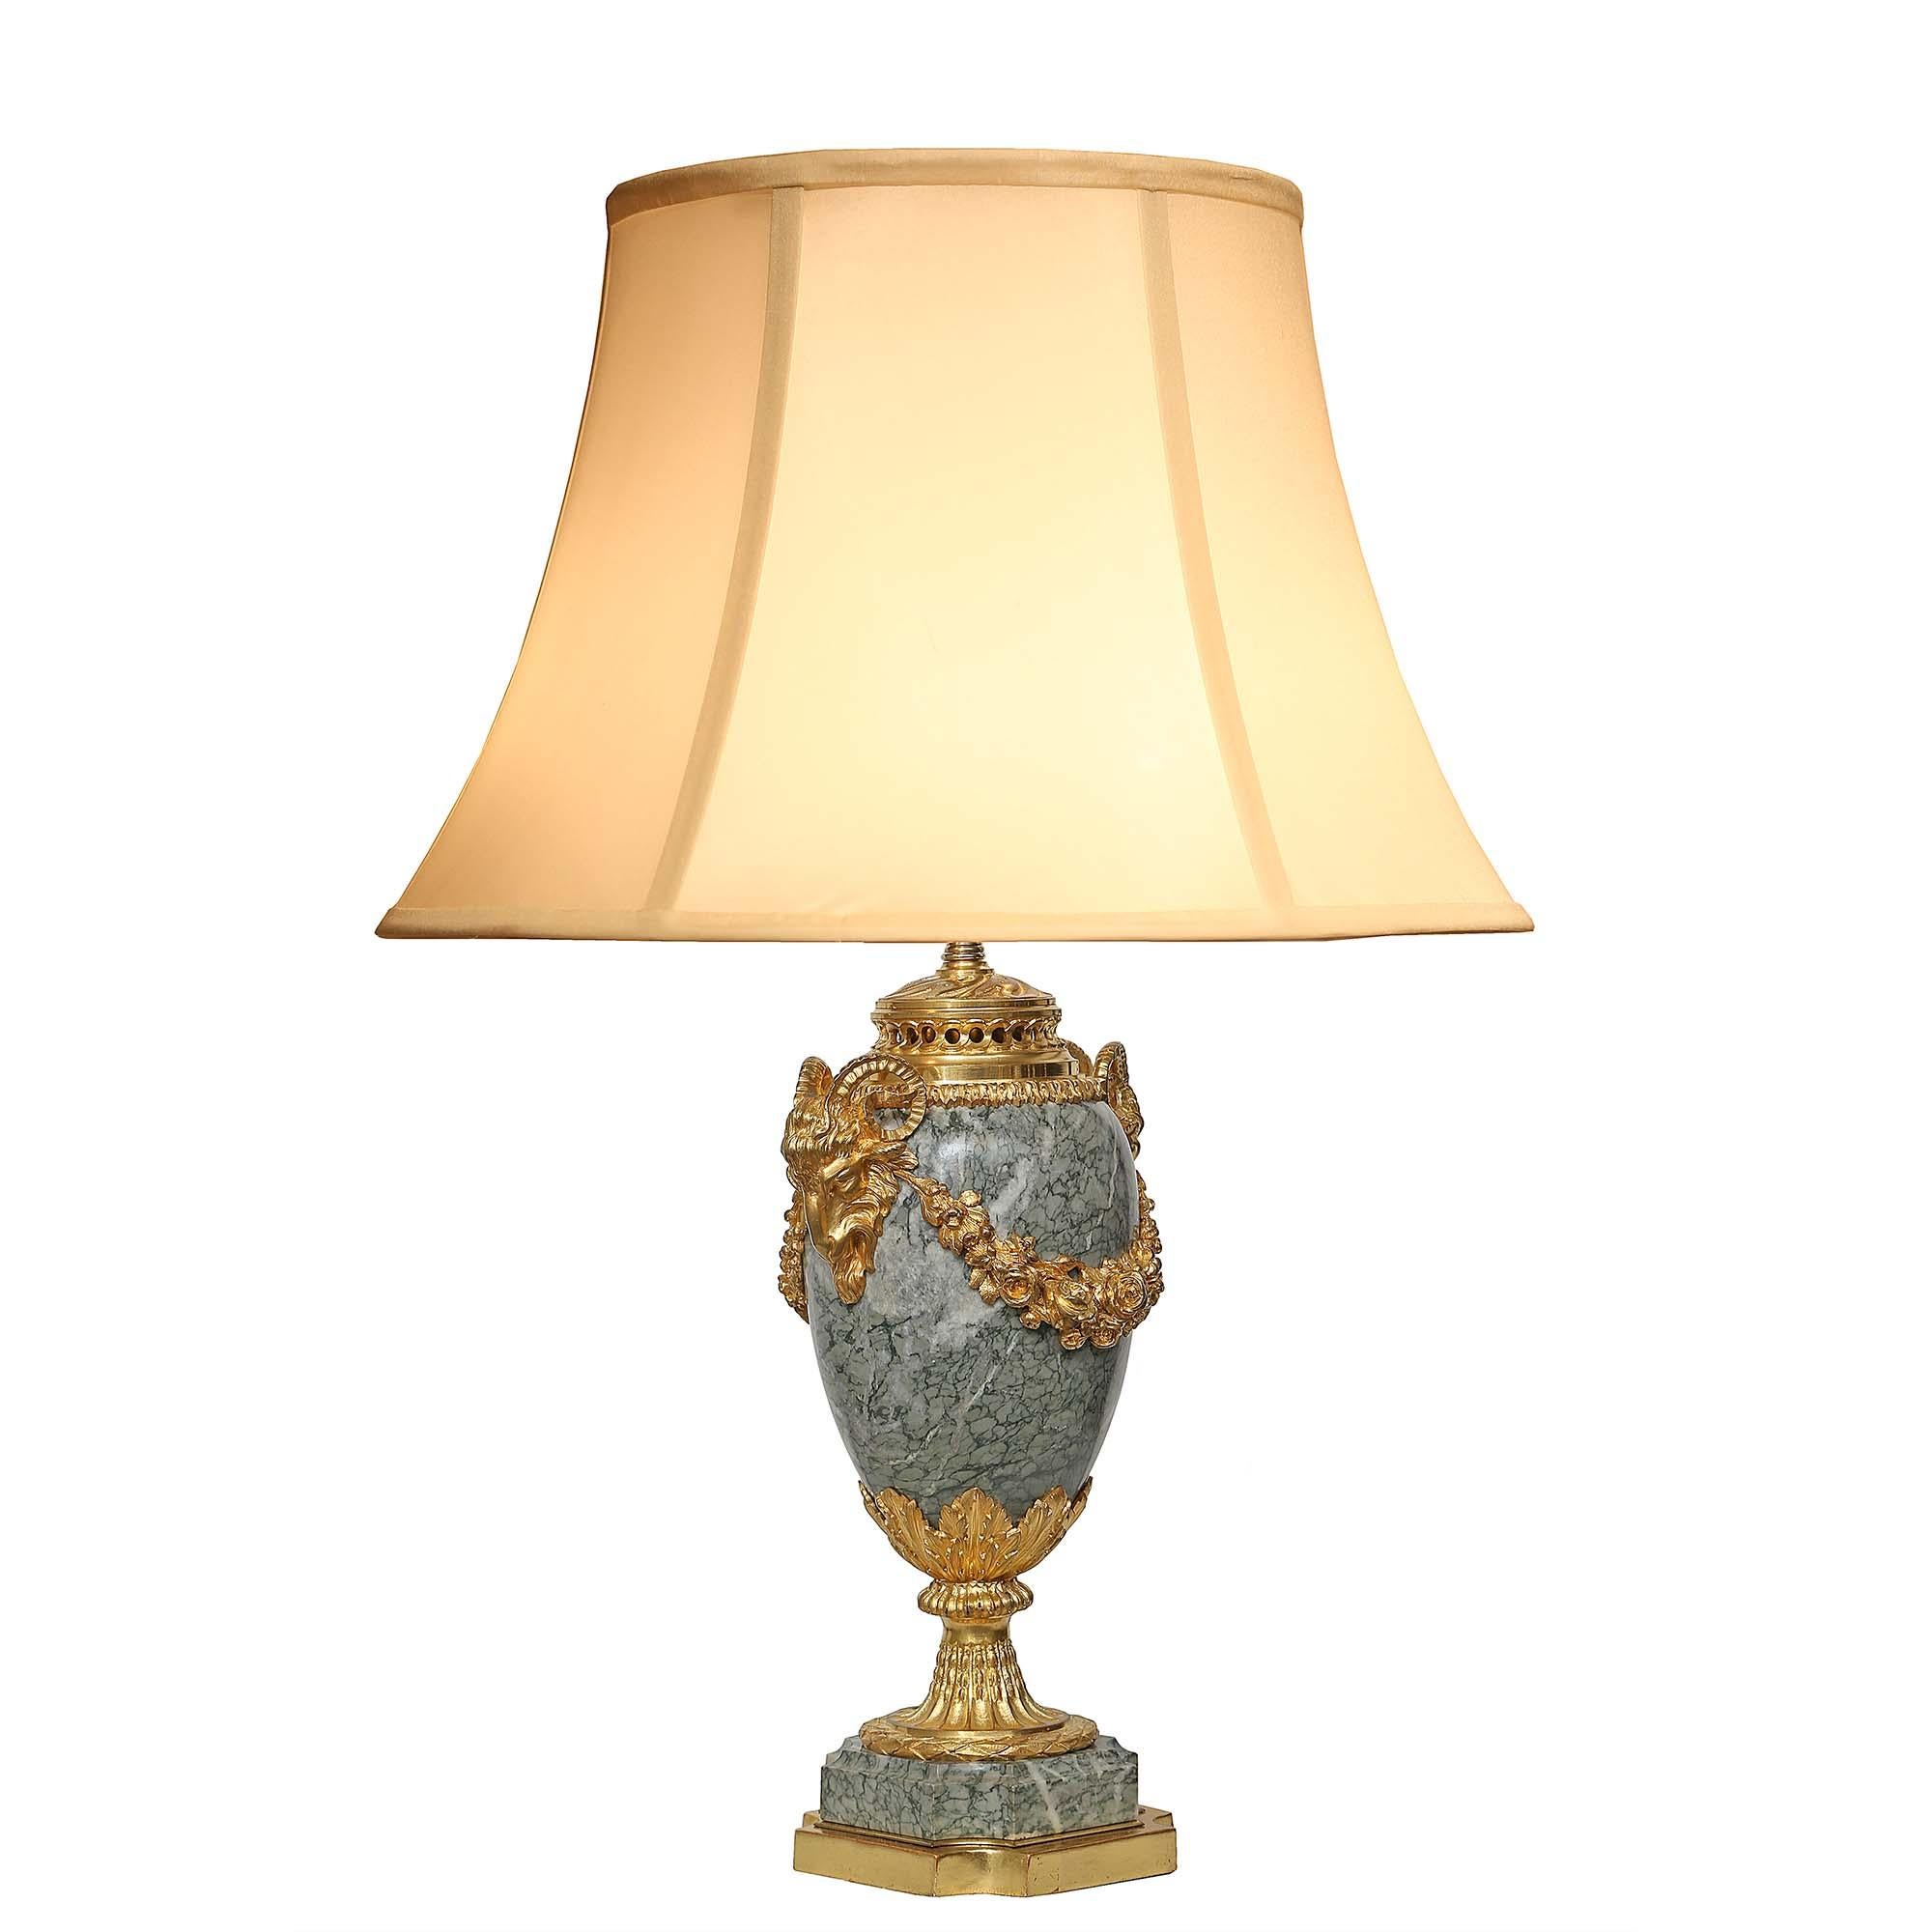 Une élégante paire d'urnes en marbre et bronze doré de style Louis XVI du 19ème siècle, montées en lampes. Chaque lampe repose sur une base carrée en bois doré et en marbre, aux angles concaves. Le socle richement ciselé, satiné et bruni, au design